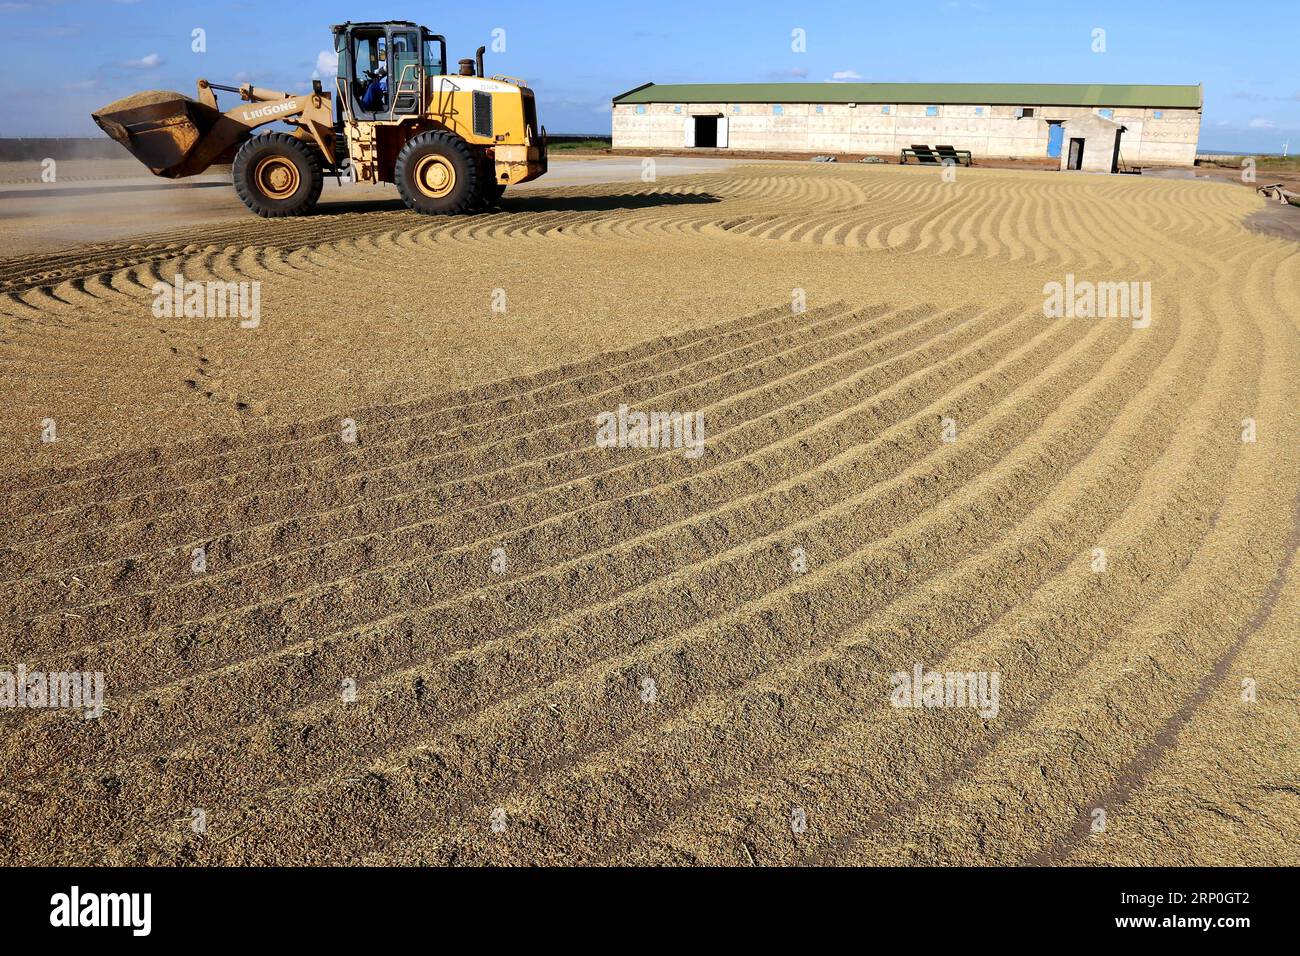 (180514) -- GAZA (MOSAMBIK), 14. Mai 2018 () -- Foto aufgenommen am 4. April 2018 zeigt den Getreidegrund der Reisfarm Wanbao in der Provinz Gaza, Mosambik. Die Reisfarm Wanbao Mosambik, die vom China-Afrika-Entwicklungsfonds investiert wird, ist die größte ihrer Art, die China in Afrika betreibt. Das Projekt, ein umfassendes Unternehmen, das Plantagen, Lagerung, Verarbeitung und Verkauf umfasst, zielt auf die Entwicklung von 20.000 Hektar Ackerland ab und wird Landwirte in den umliegenden Gebieten dazu bringen, über weitere 80.000 Hektar Getreide anzubauen. () (sxk) MOSAMBIK-GAZA-CHINA-LANDWIRTSCHAFTSPROJEKT Xinhua PUBLICATIONxN Stockfoto